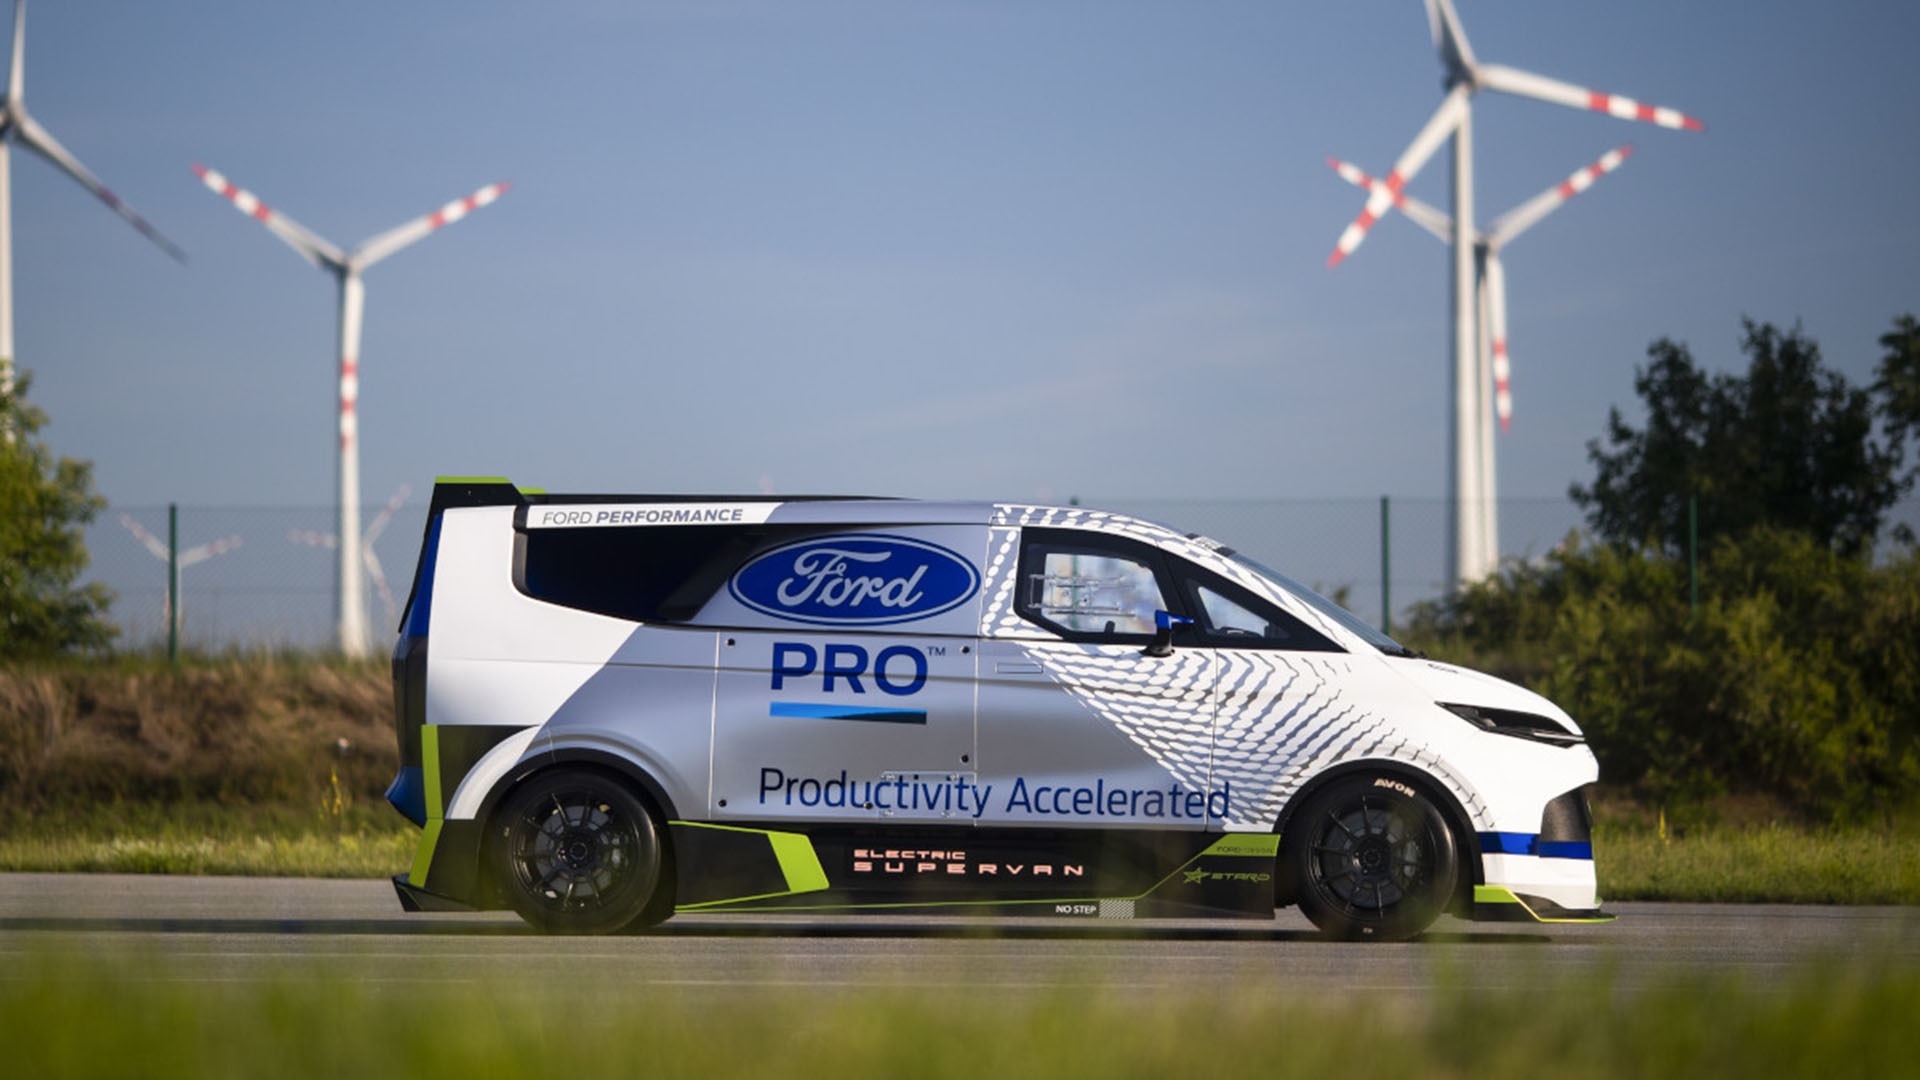 El tratamiento aerodinámico de la Ford SuperVan 4 es notable. A 300 km/h logra un sustento gracias al aire de unos 500 kg